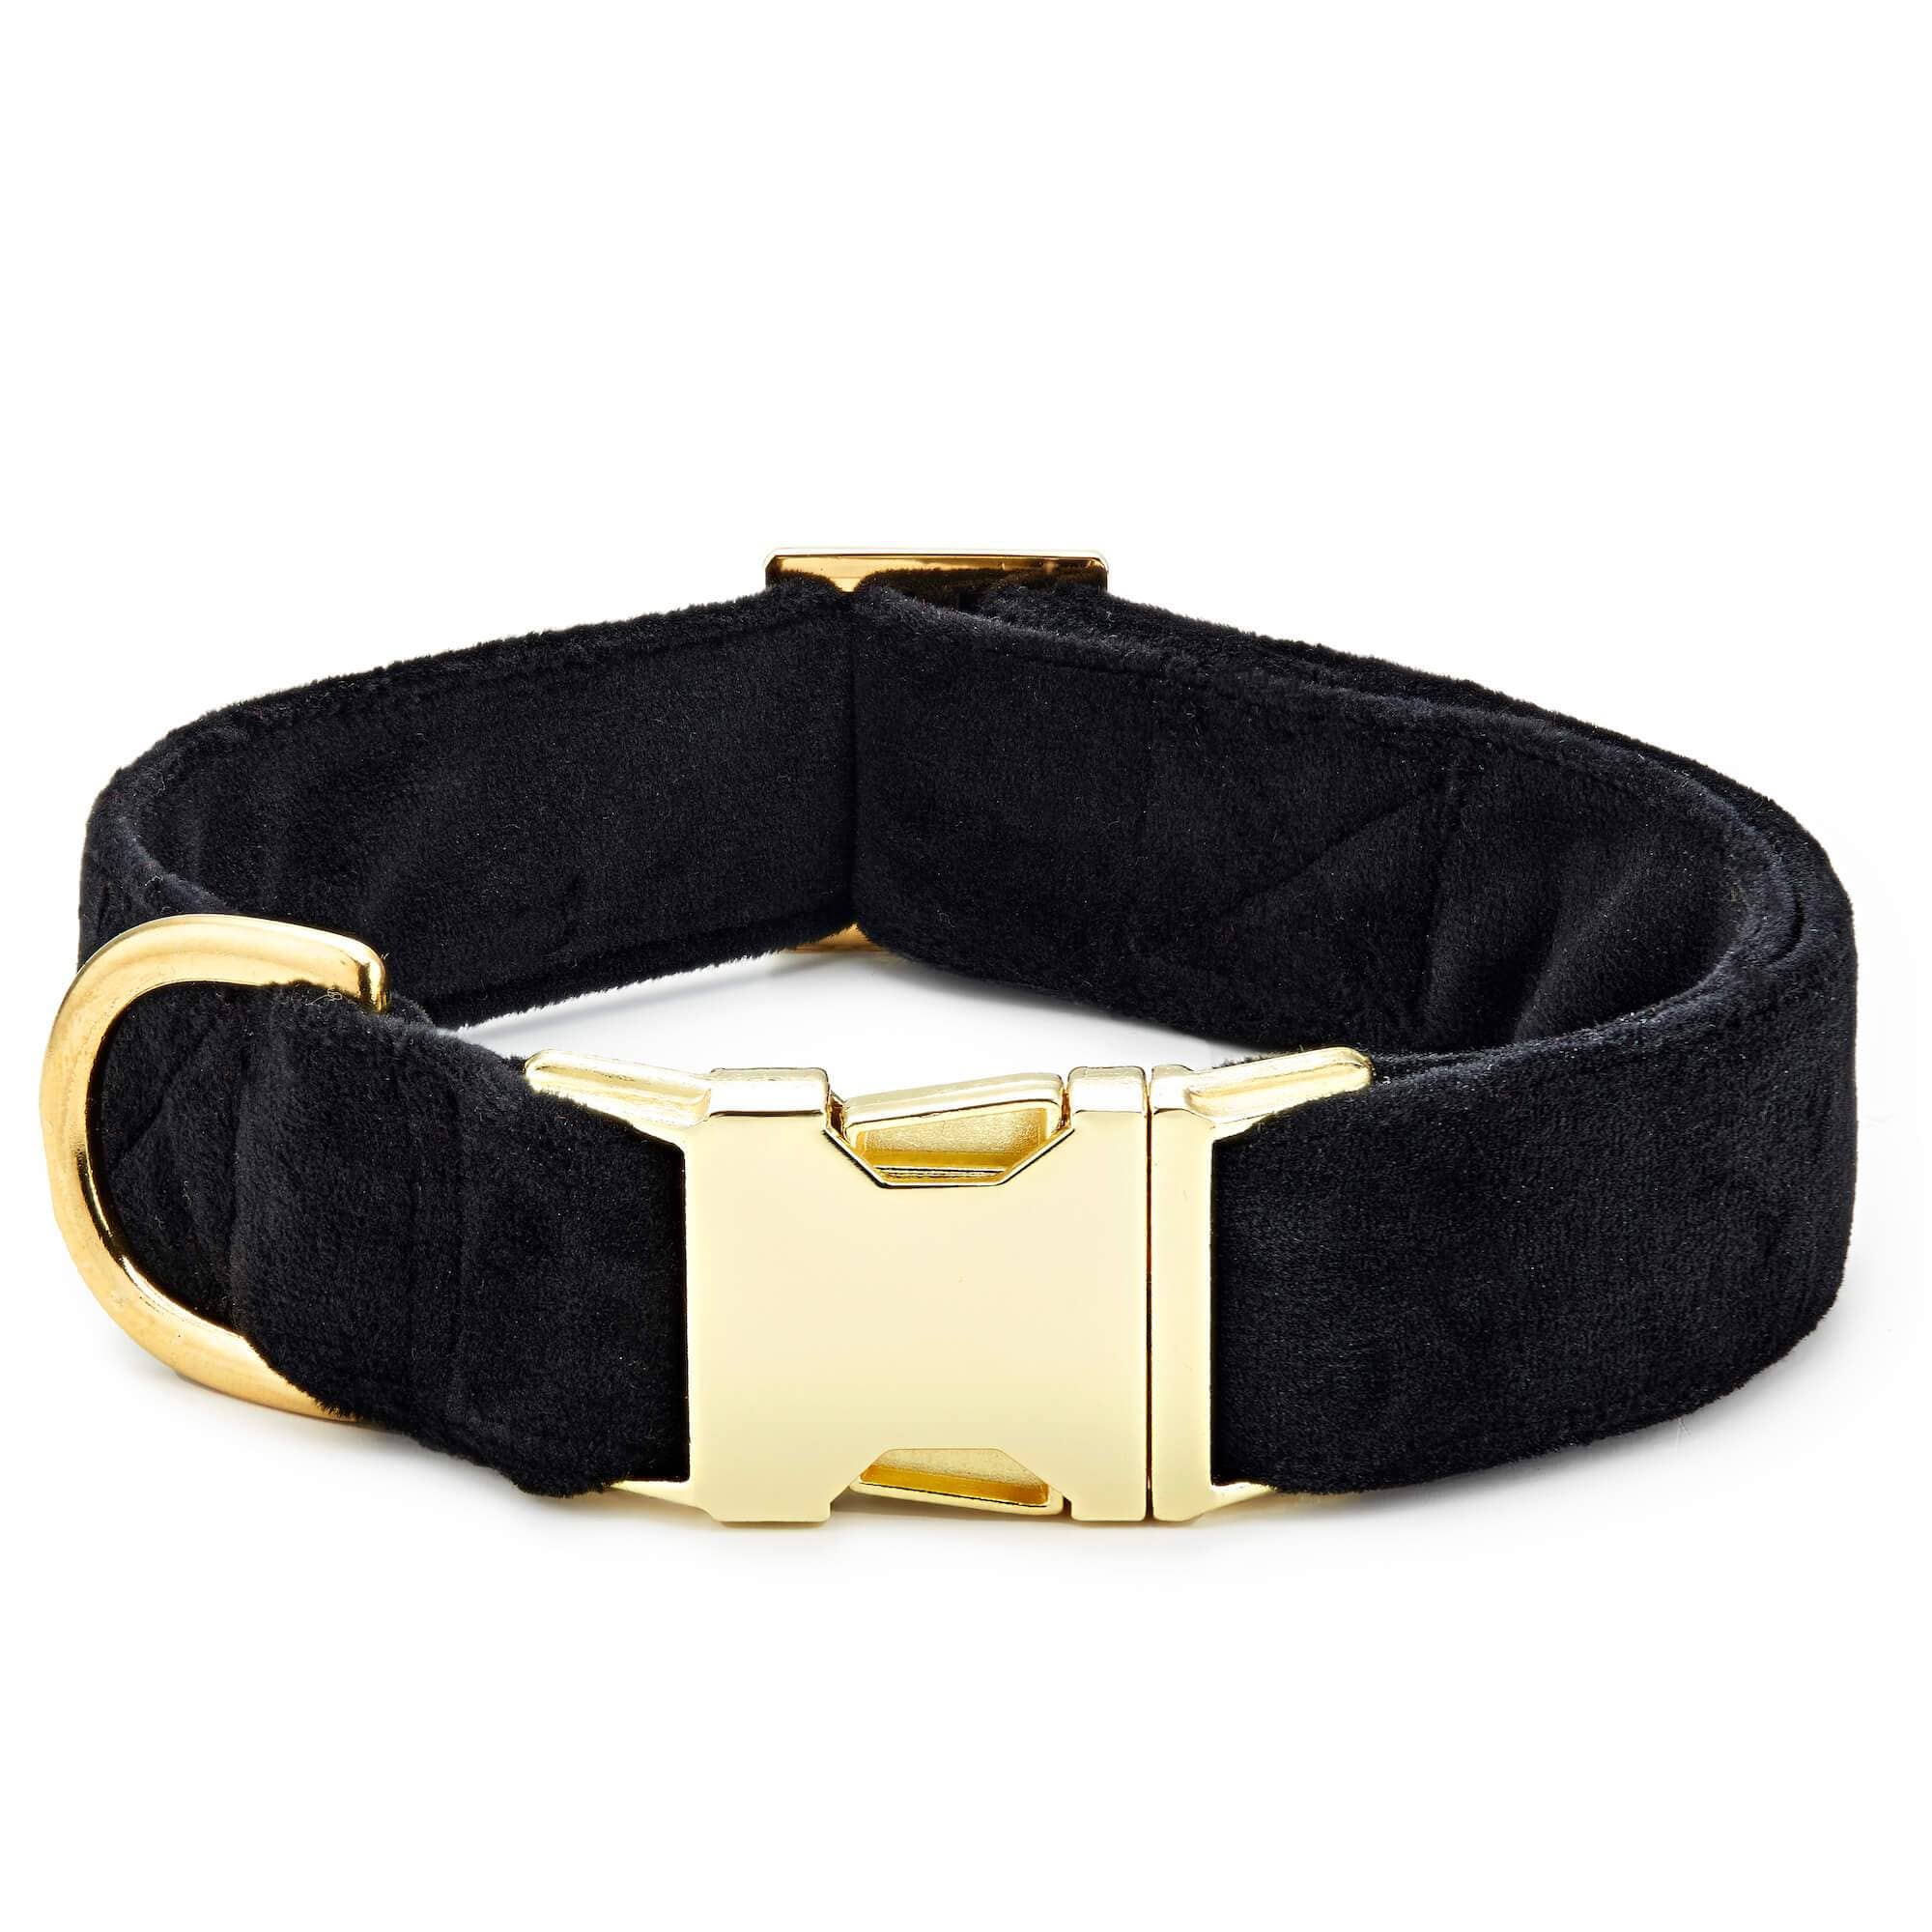 The Foggy Dog - Black Velvet Dog Collar